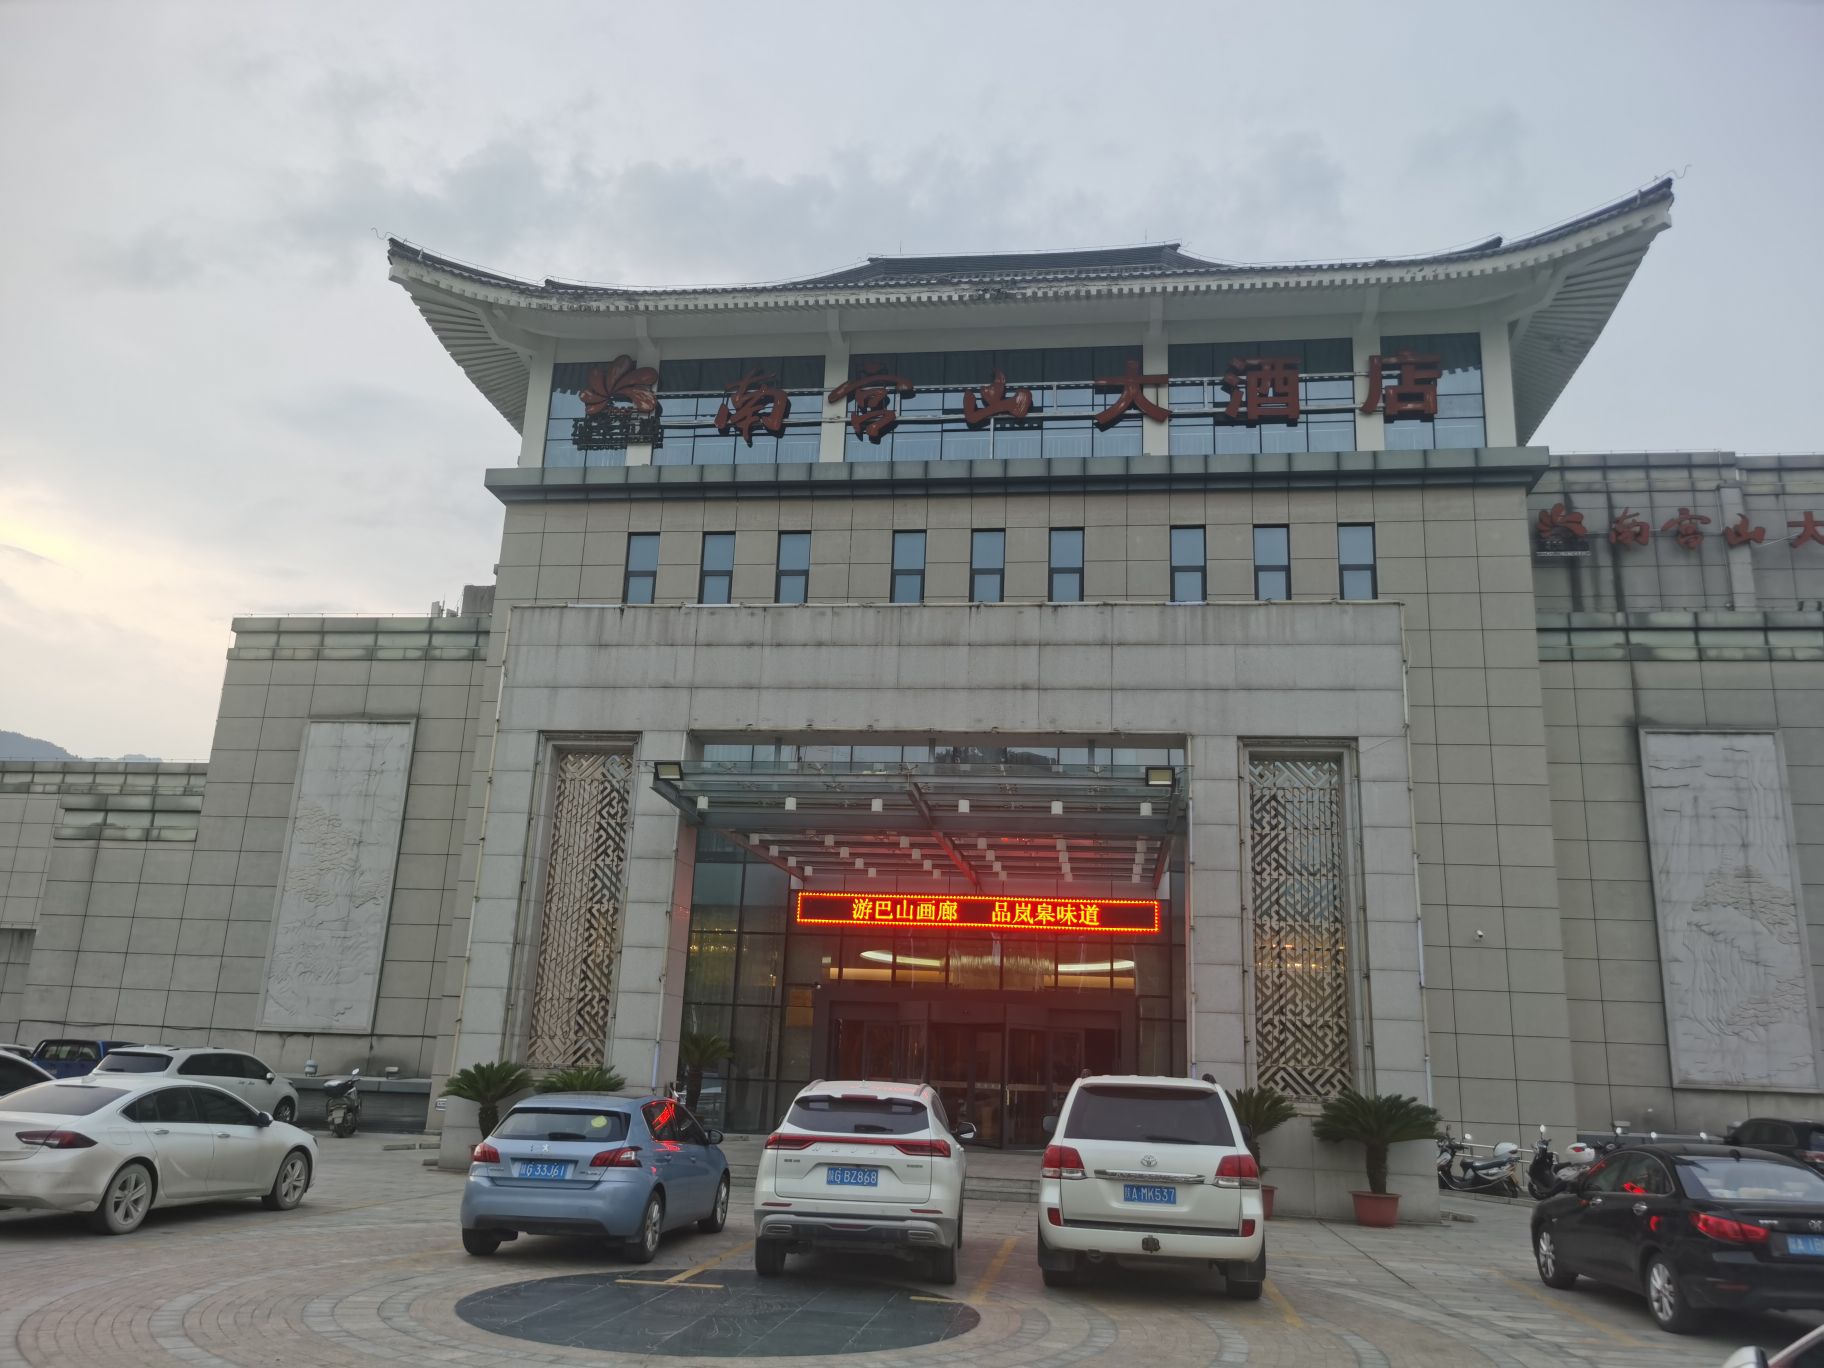 评价晚了，酒店为岚皋县最好的酒店，大气上档次，停车方便，交通便利，房间整洁卫生，设施齐全，酒店服务热